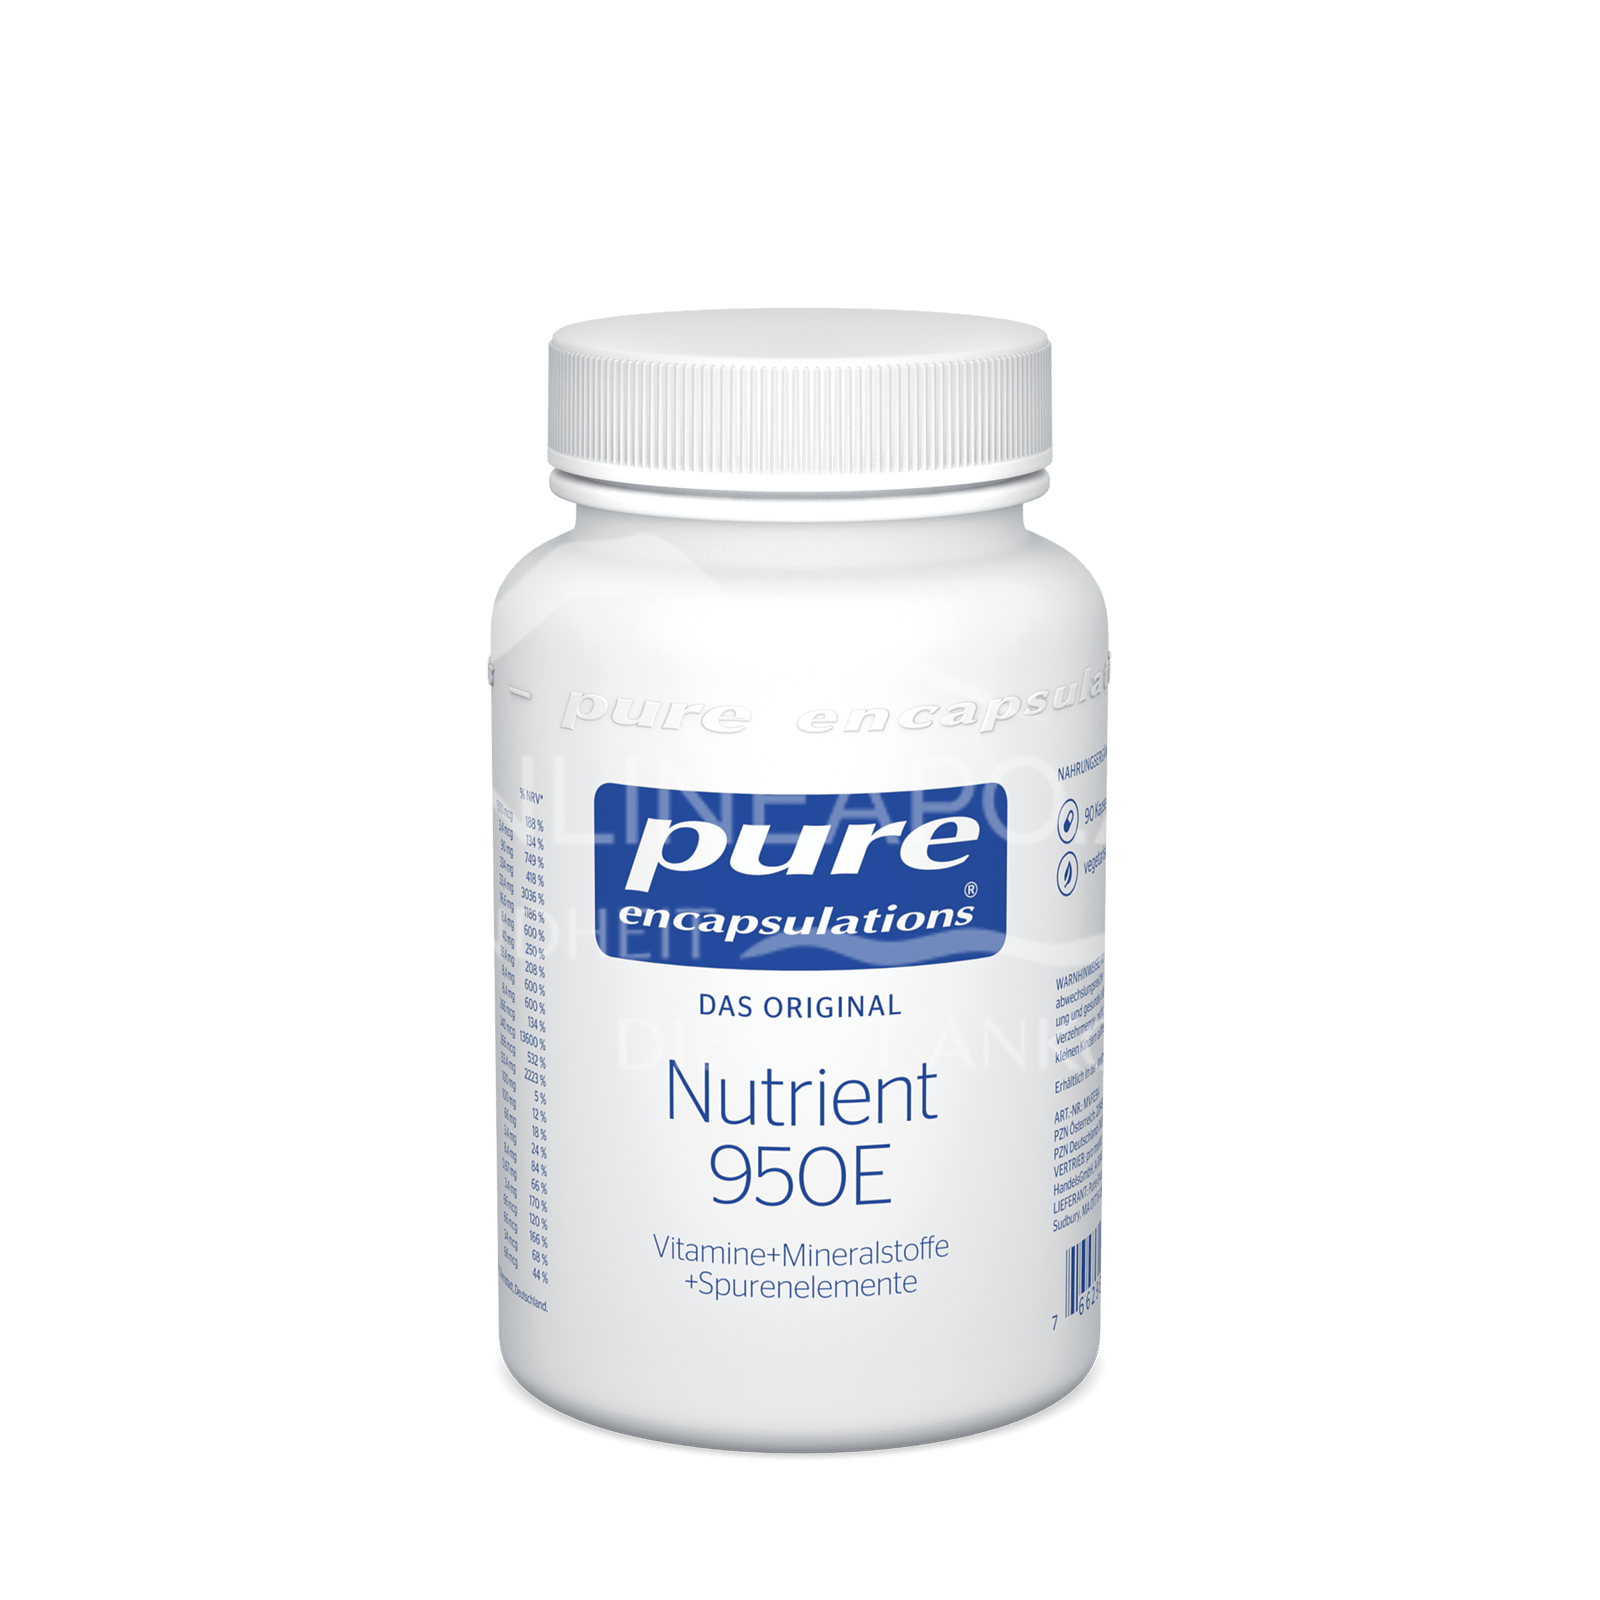 pure encapsulations® Nutrient 950E